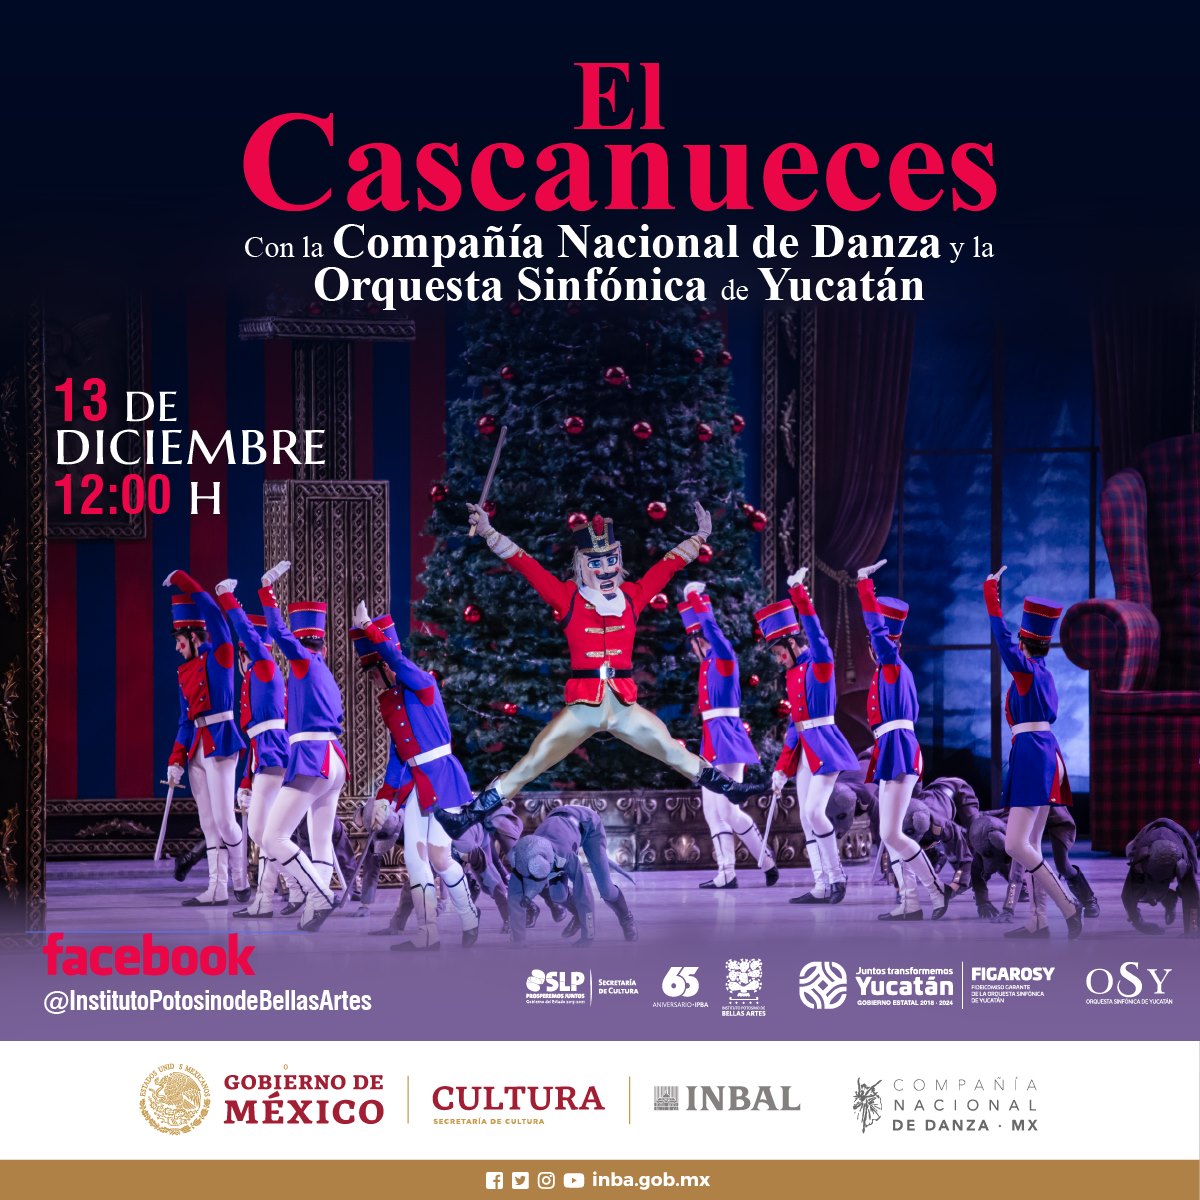 “El Cascanueces” con la Compañía Nacional de Danza y la Orquesta Sinfónica de Yucatán